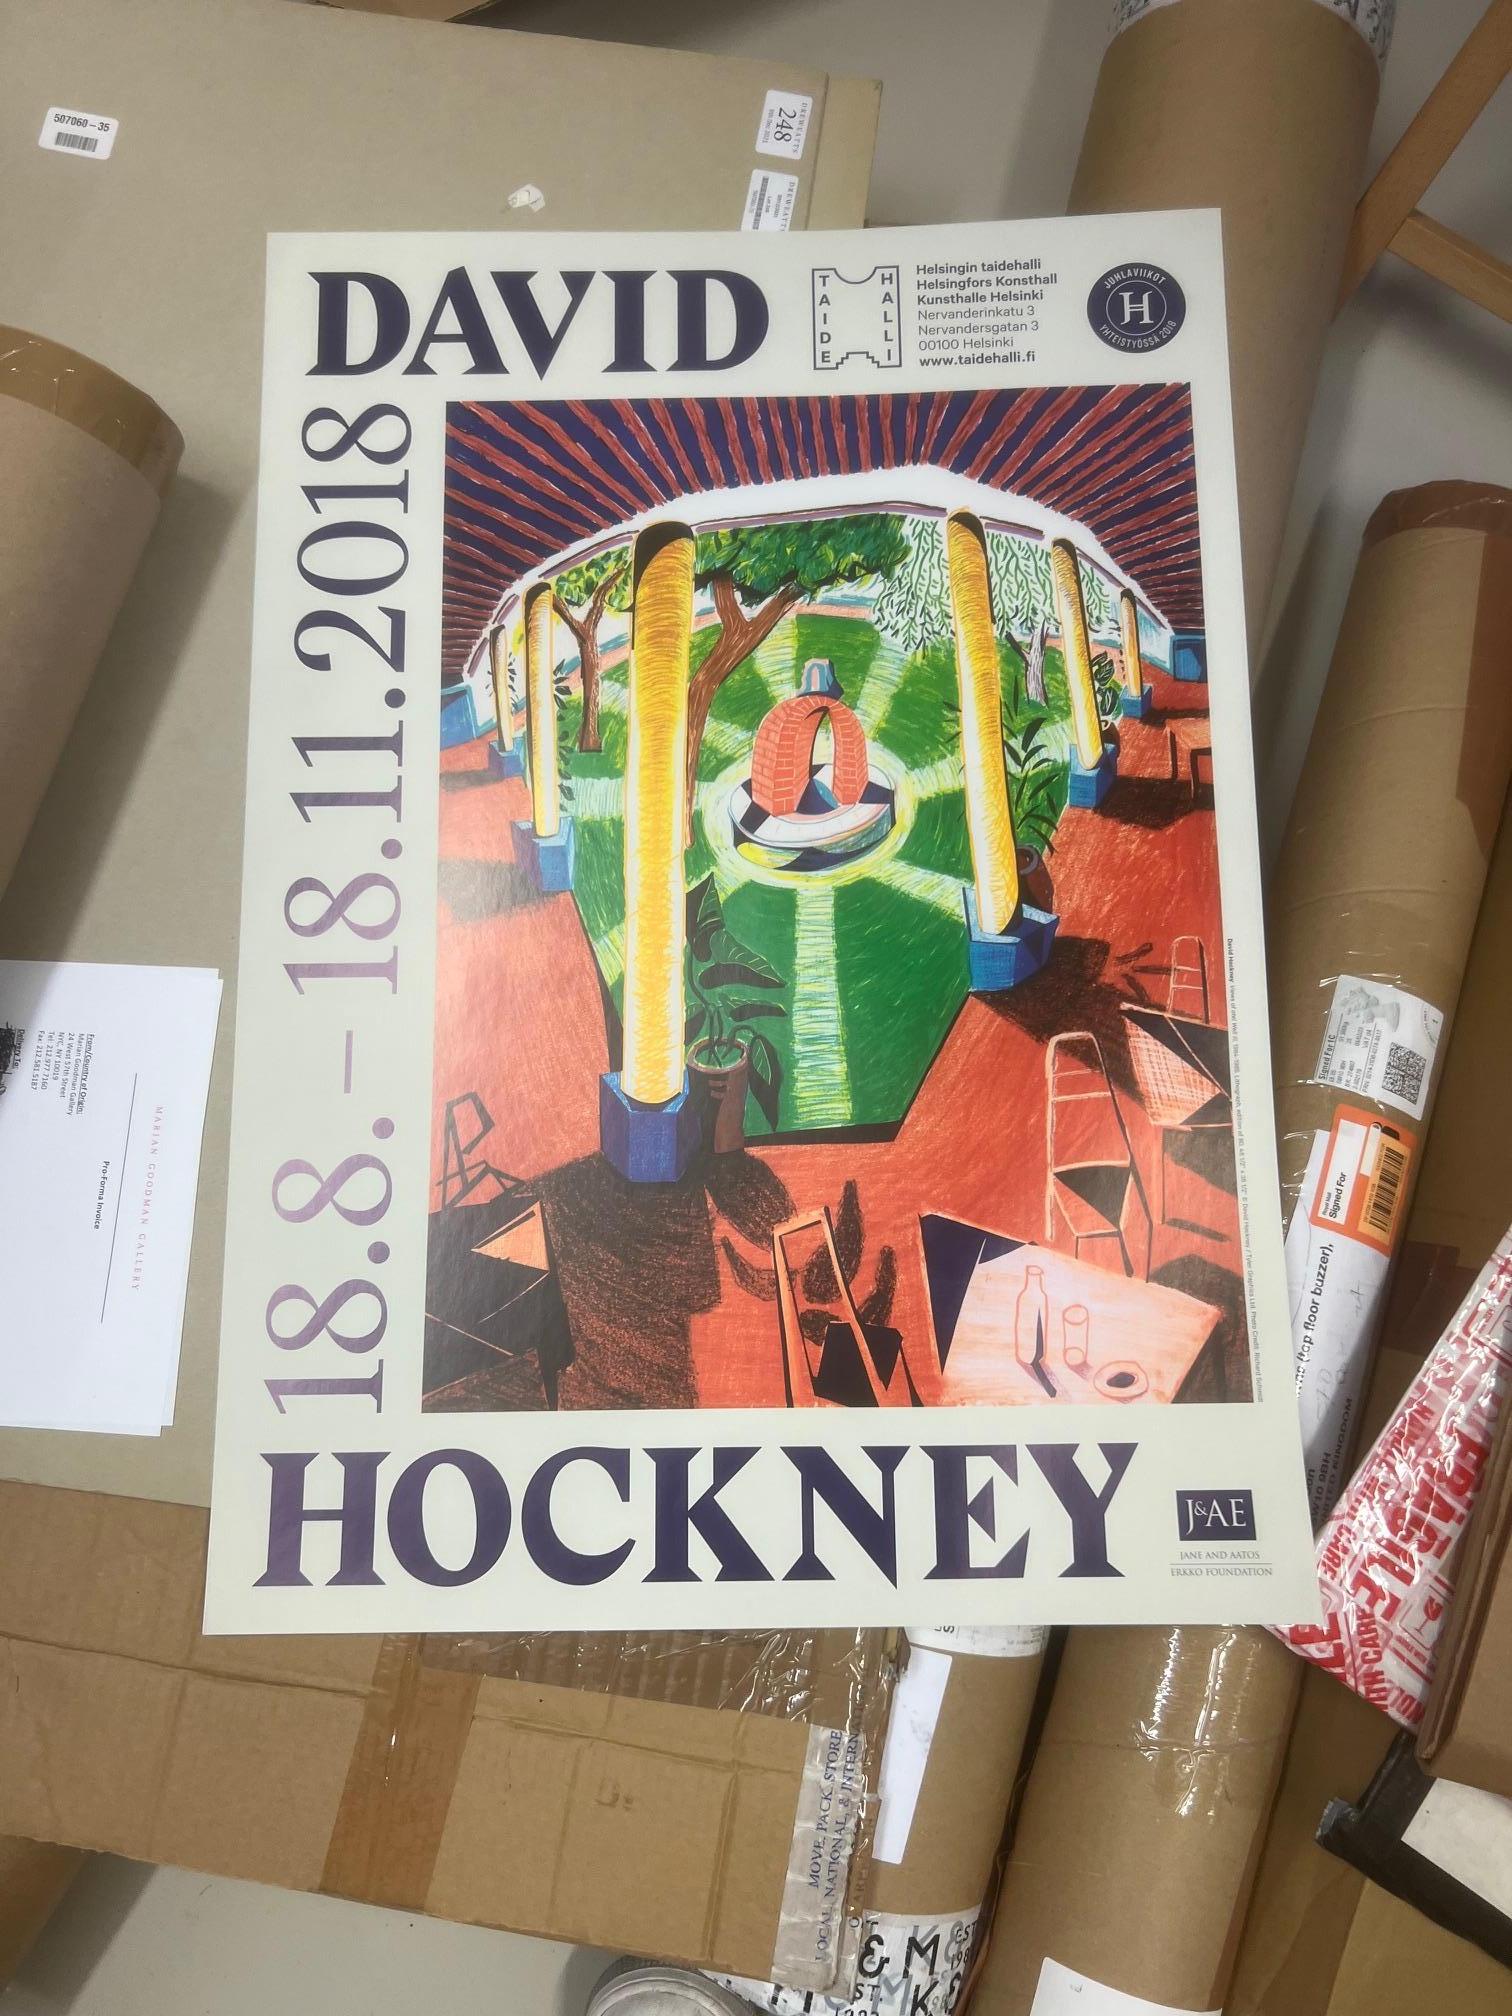 david hockney exhibition poster